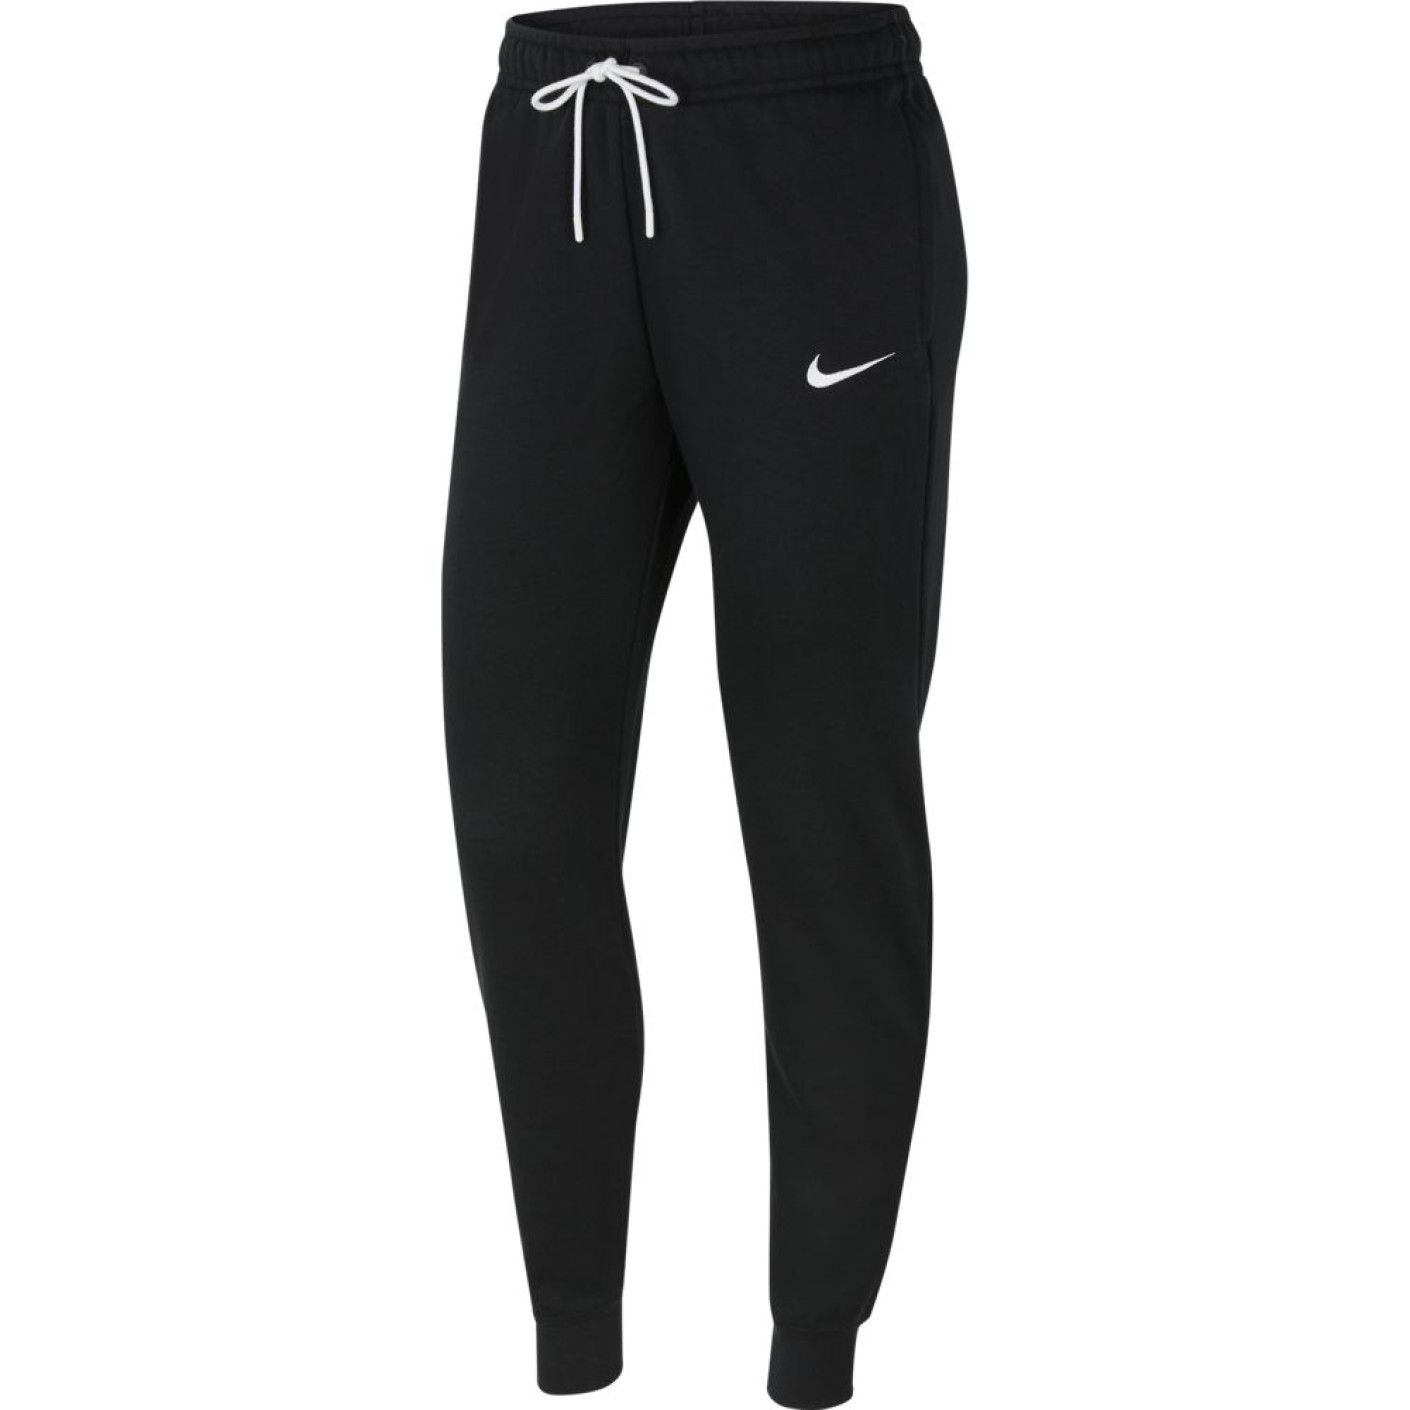 Nike Park 20 Training pants Women's Black